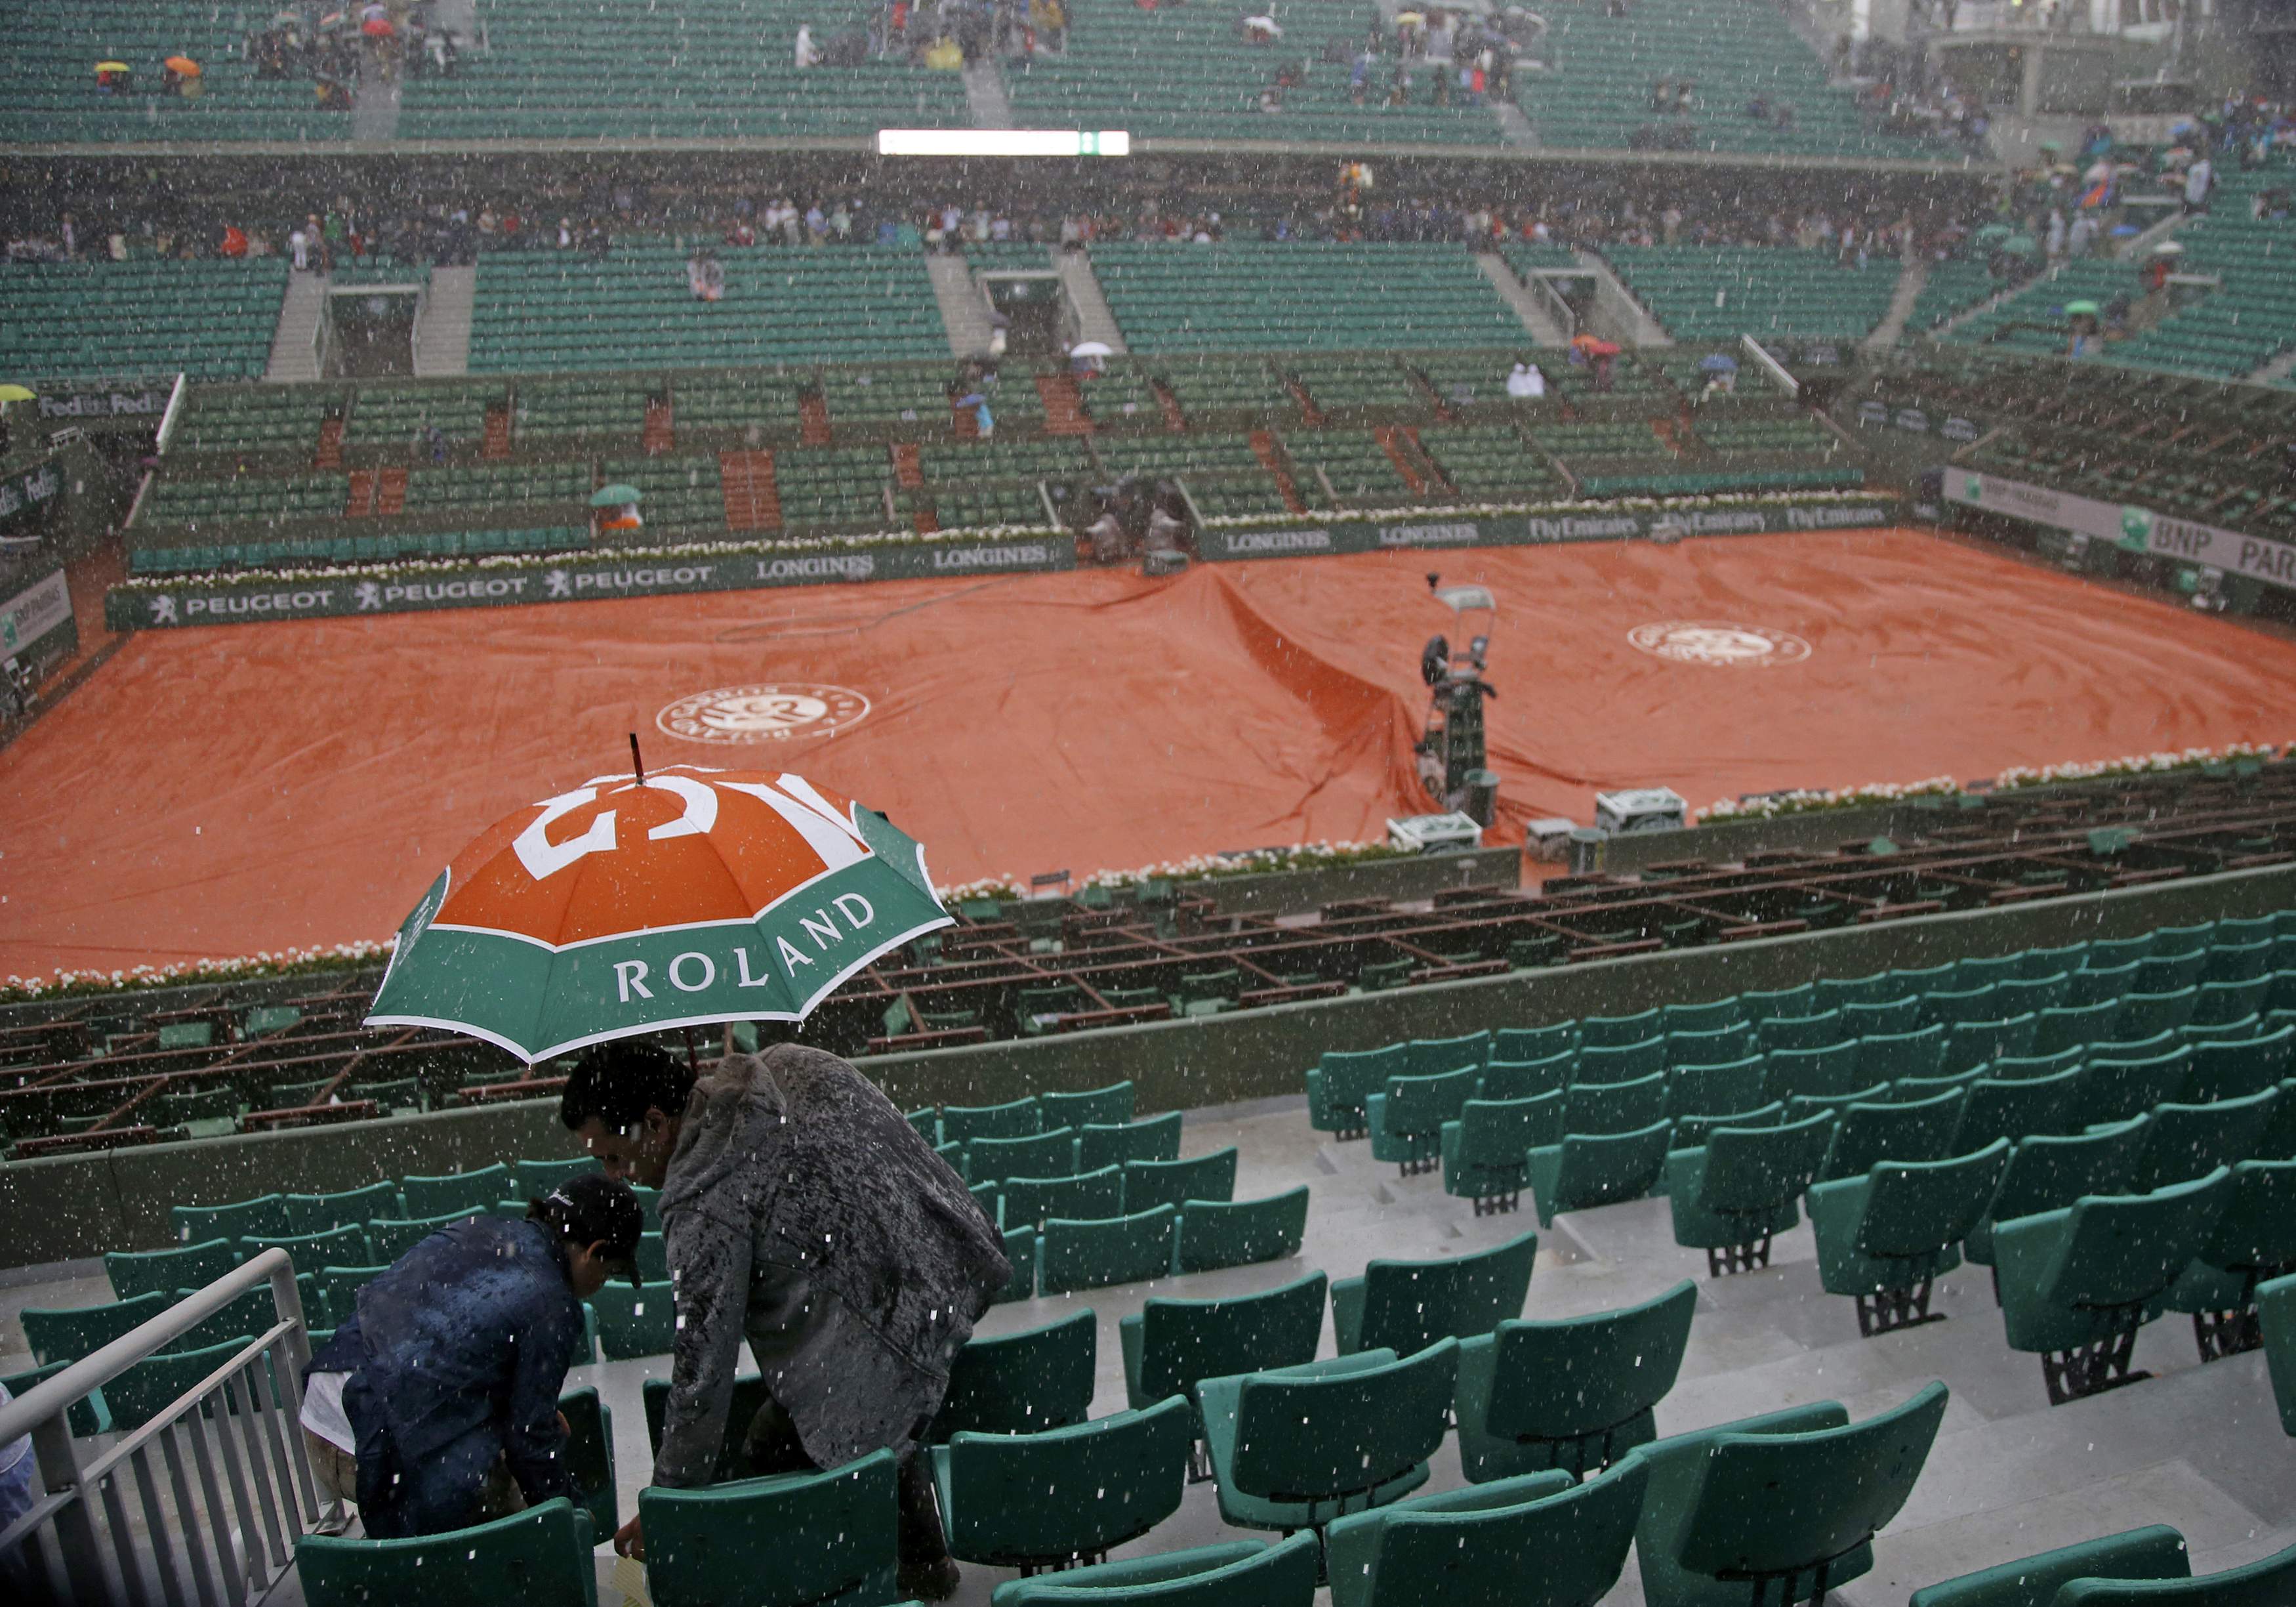 Anulan la jornada de Roland Garros a causa de la lluvia